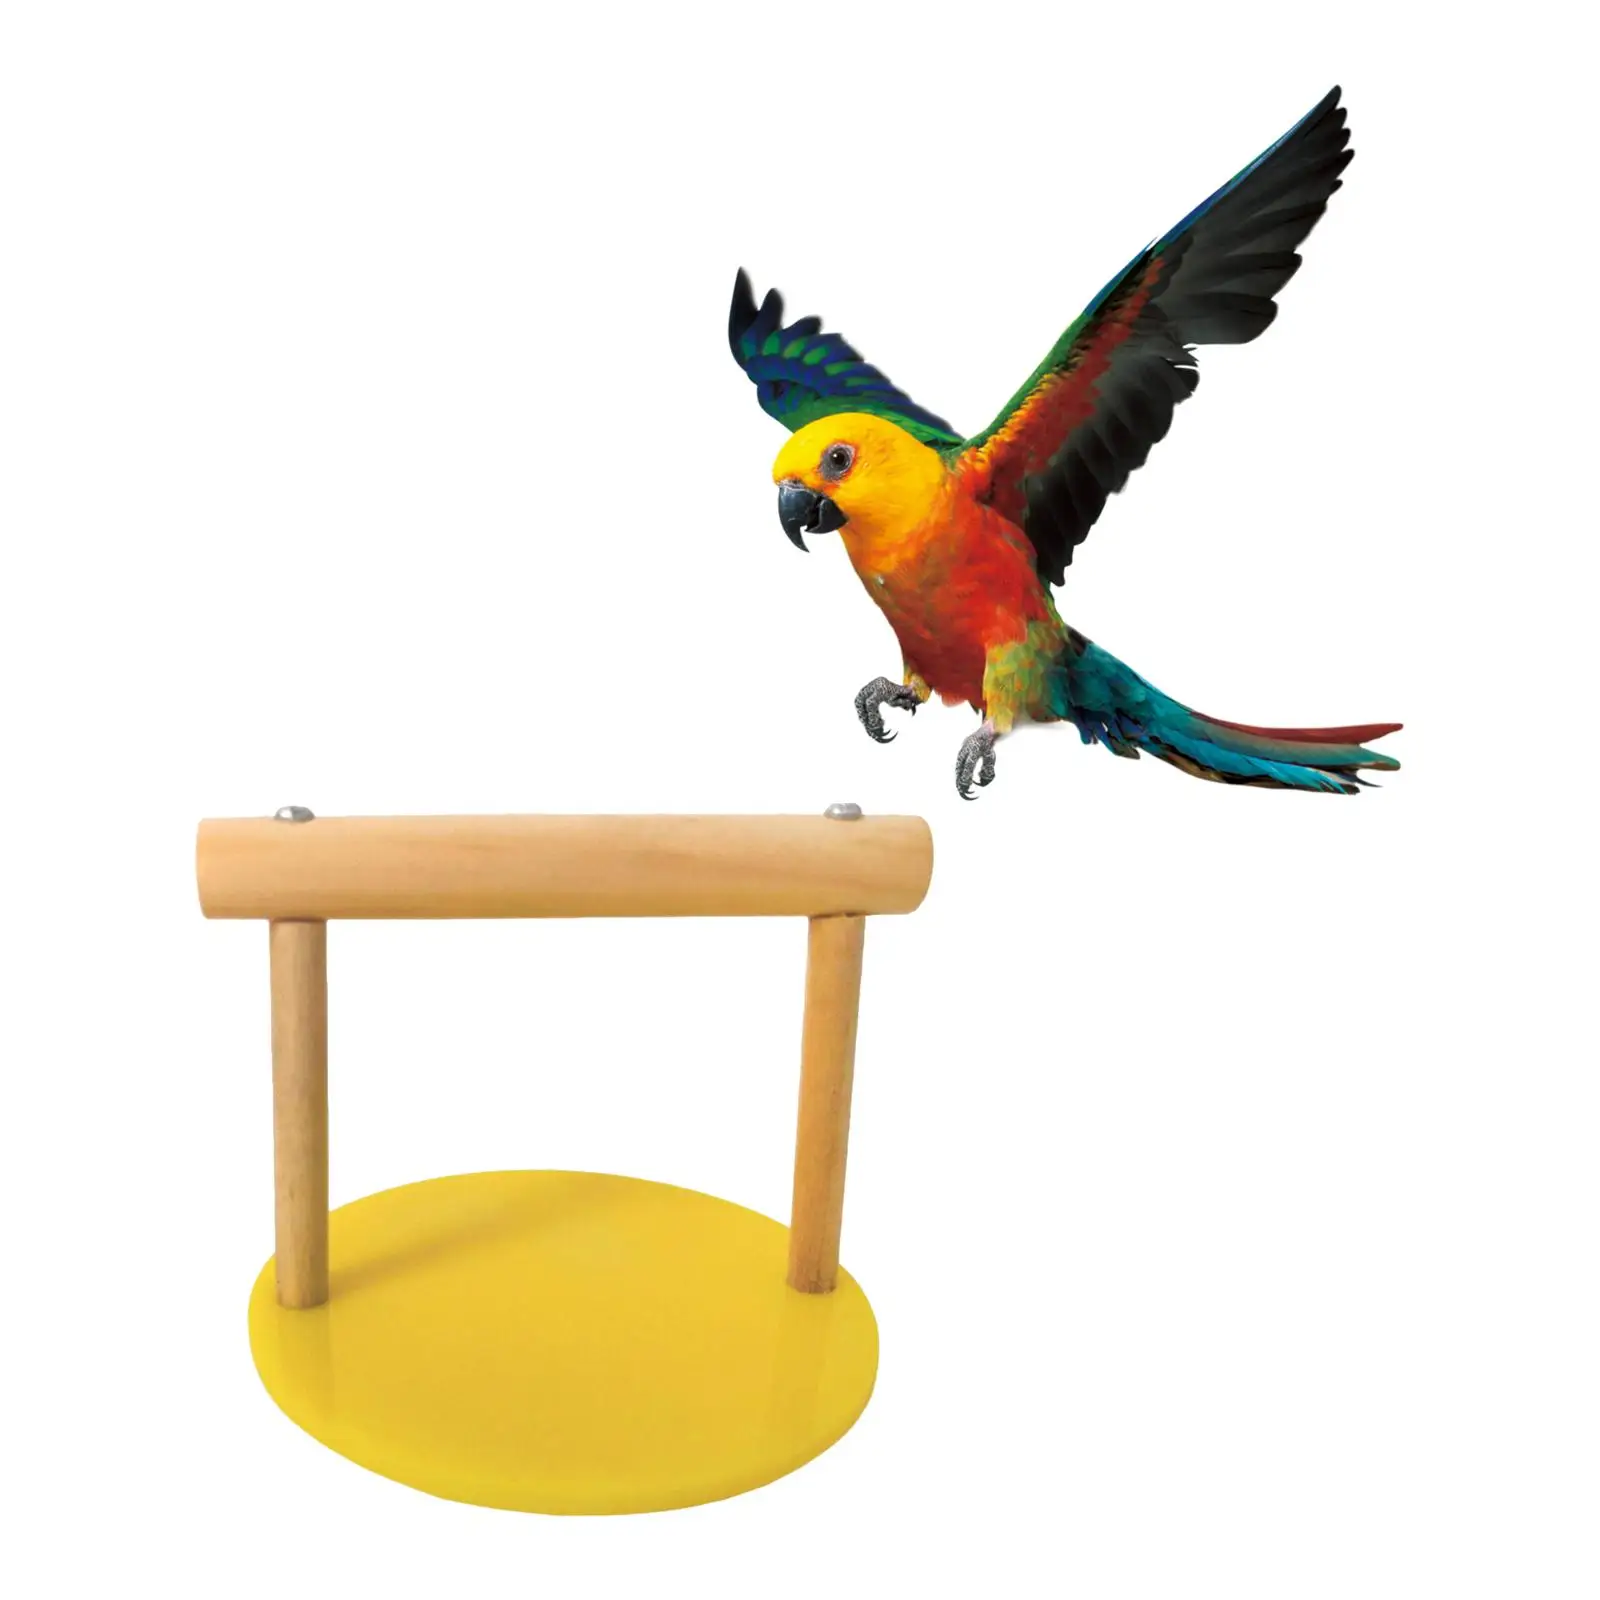 Bird Perch Tabletop Bird Supplies Cockatiel Birds Support Balance Support Shelf Parakeet Pet Birds Toy Climbing Budgie Home